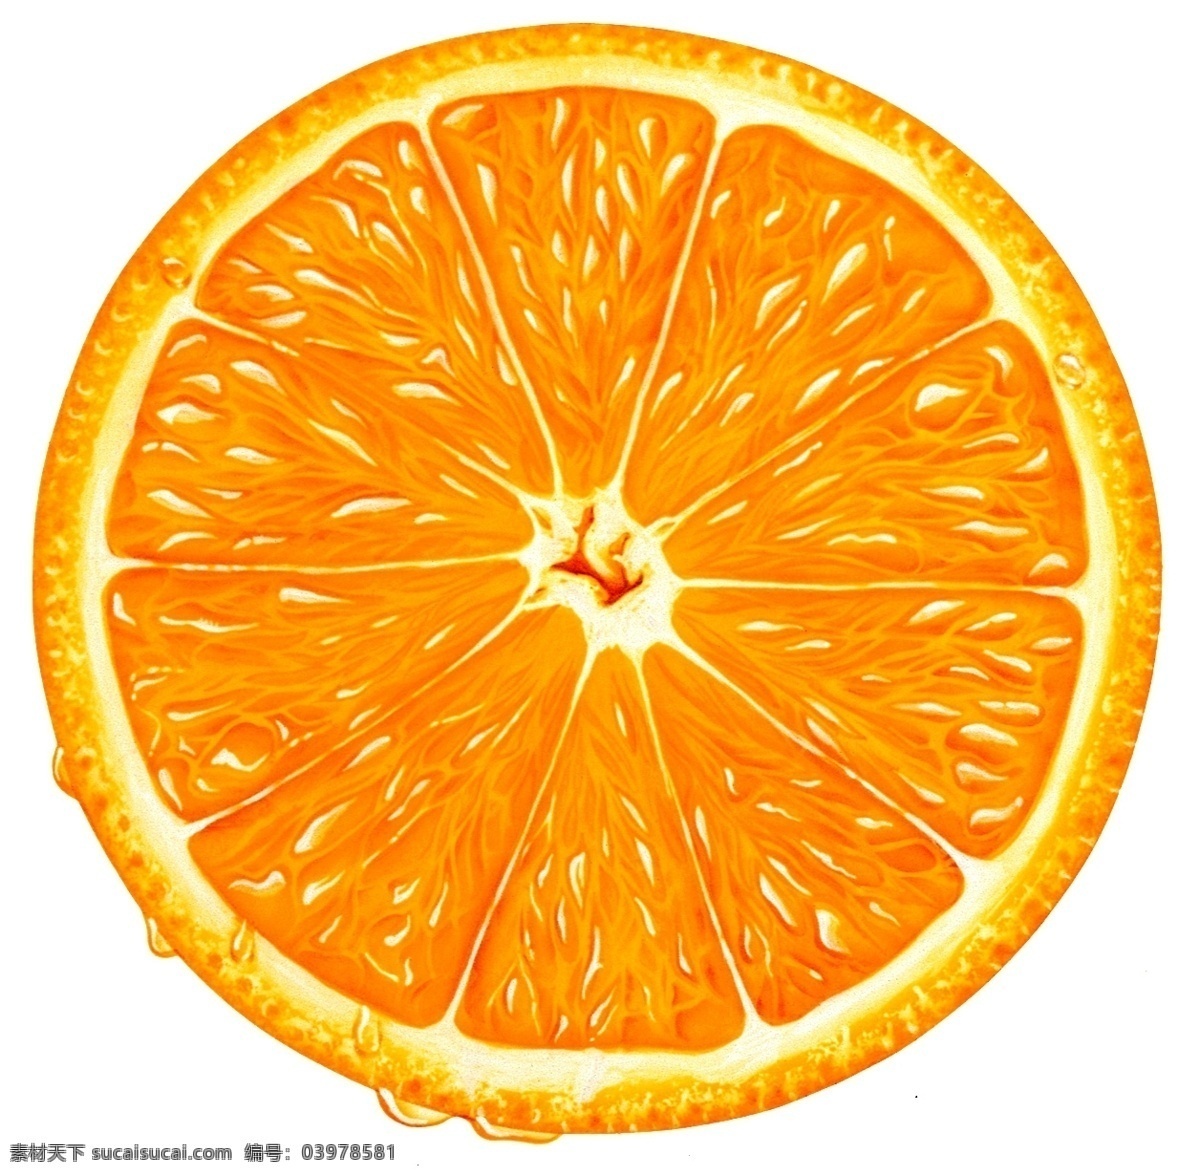 果脯 果肉 水果 美味 话梅 健康 营养 广告 大 辞典 橙色